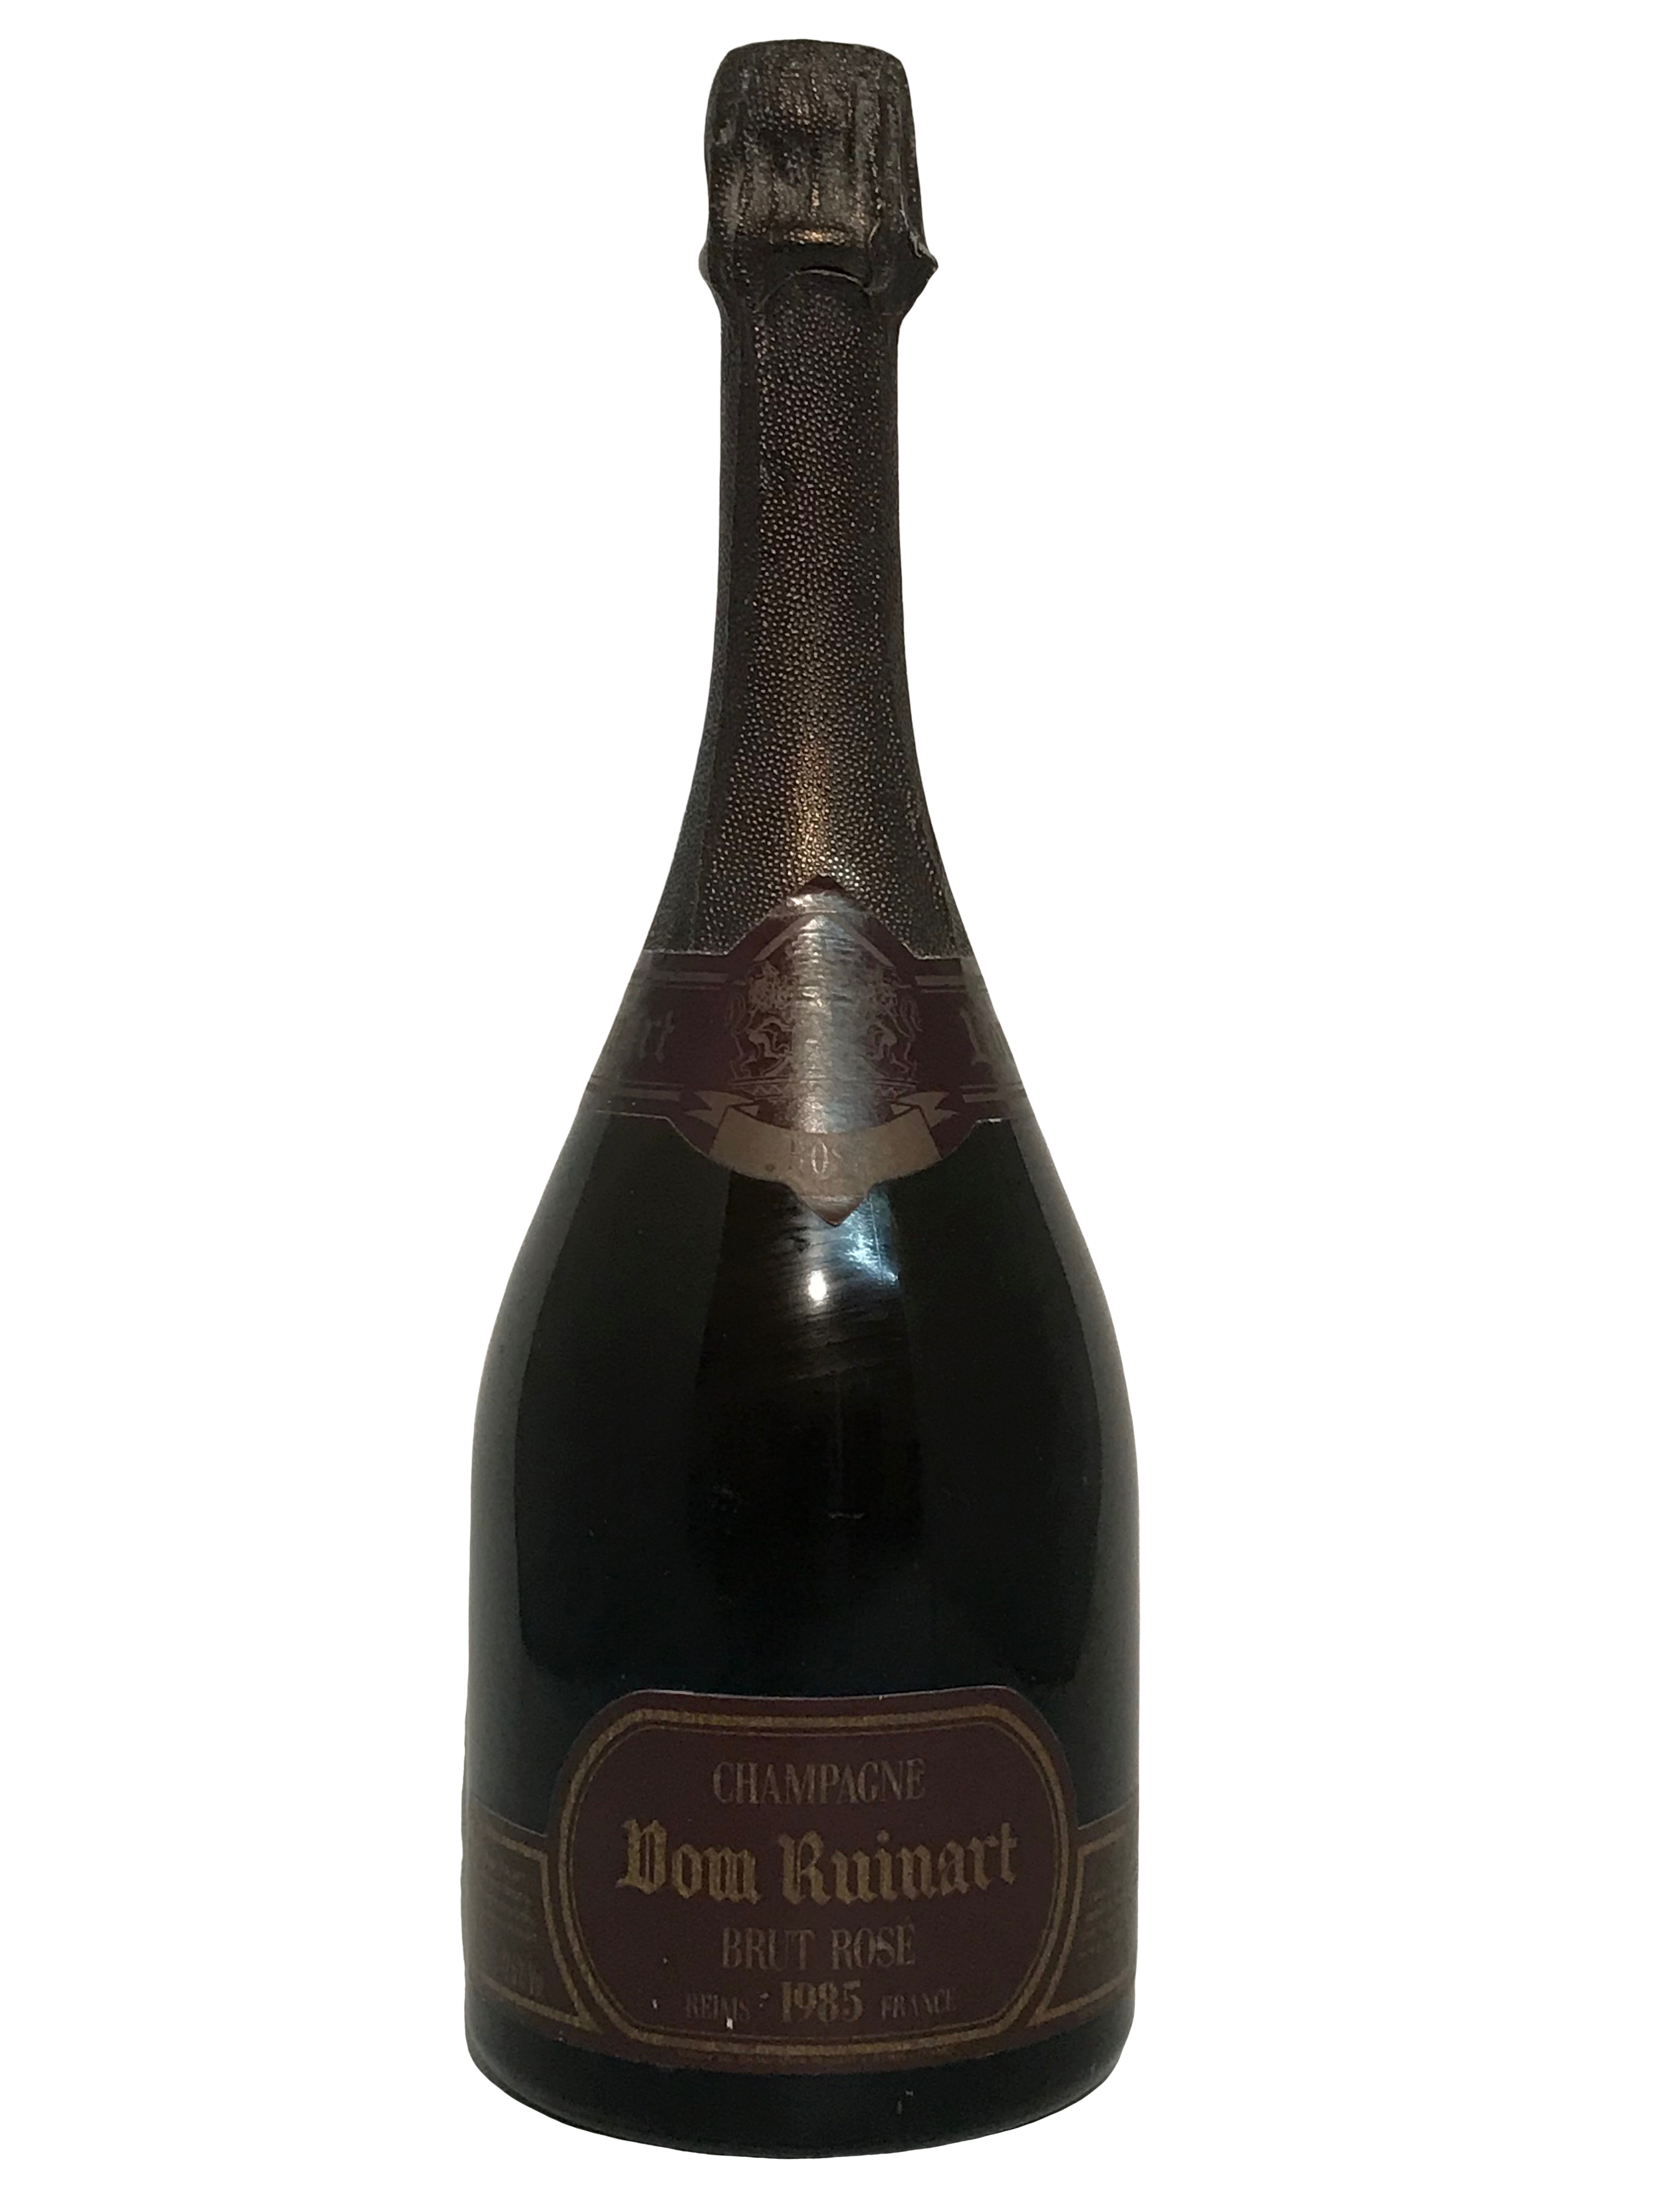 Champagne Ruinart Brut Rosé 1985